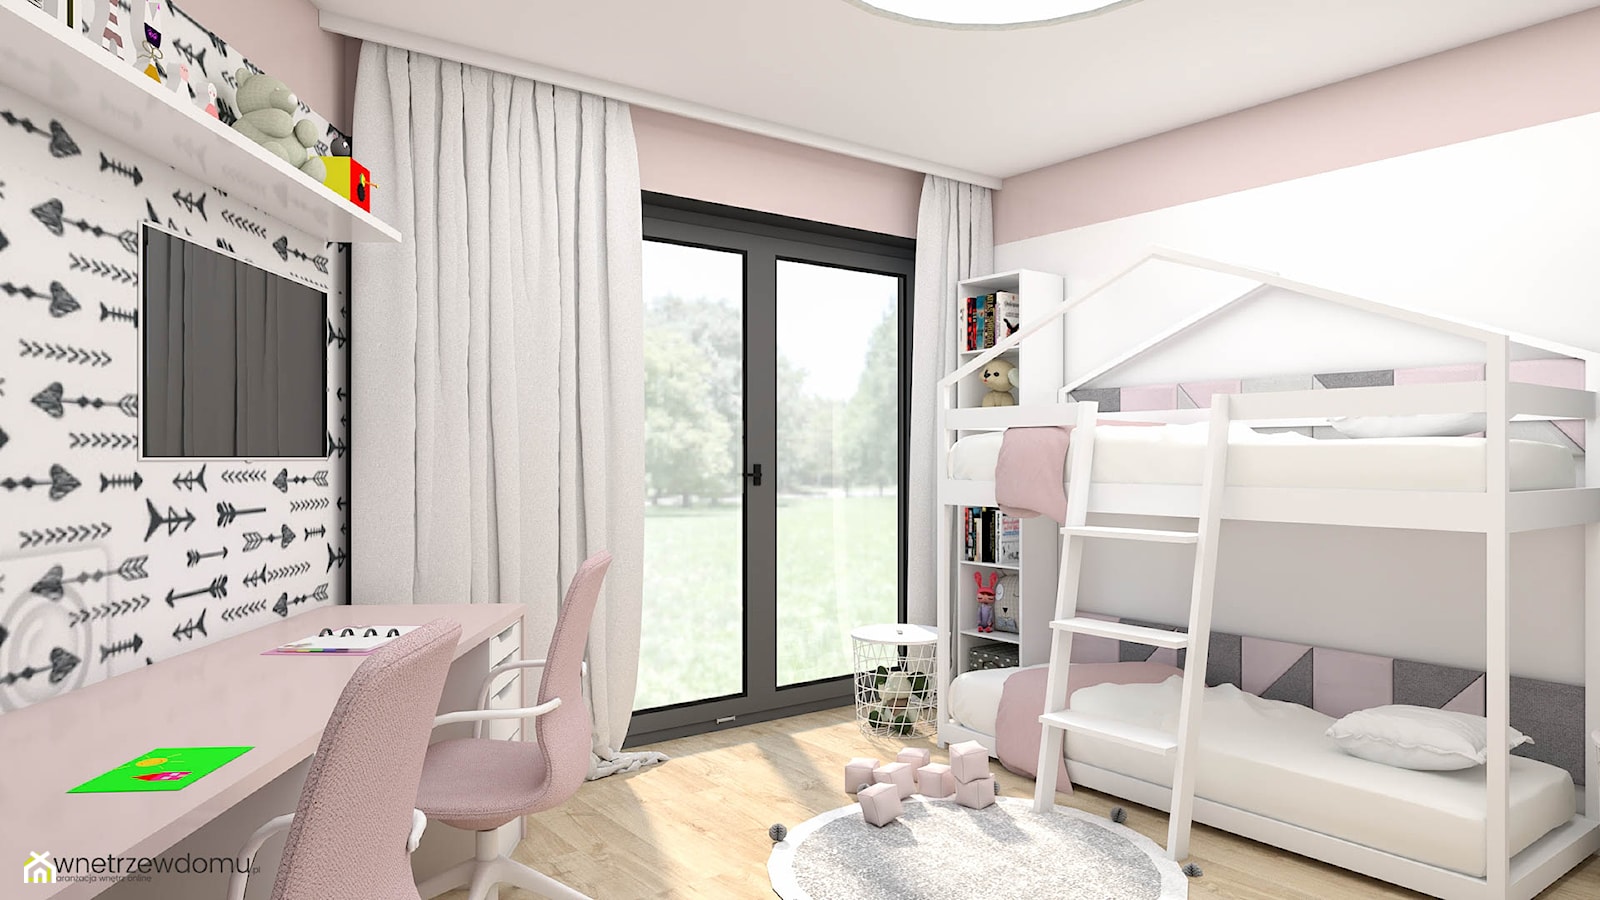 Różowo-biały pokój dla dziewczynek - zdjęcie od wnetrzewdomu - Homebook